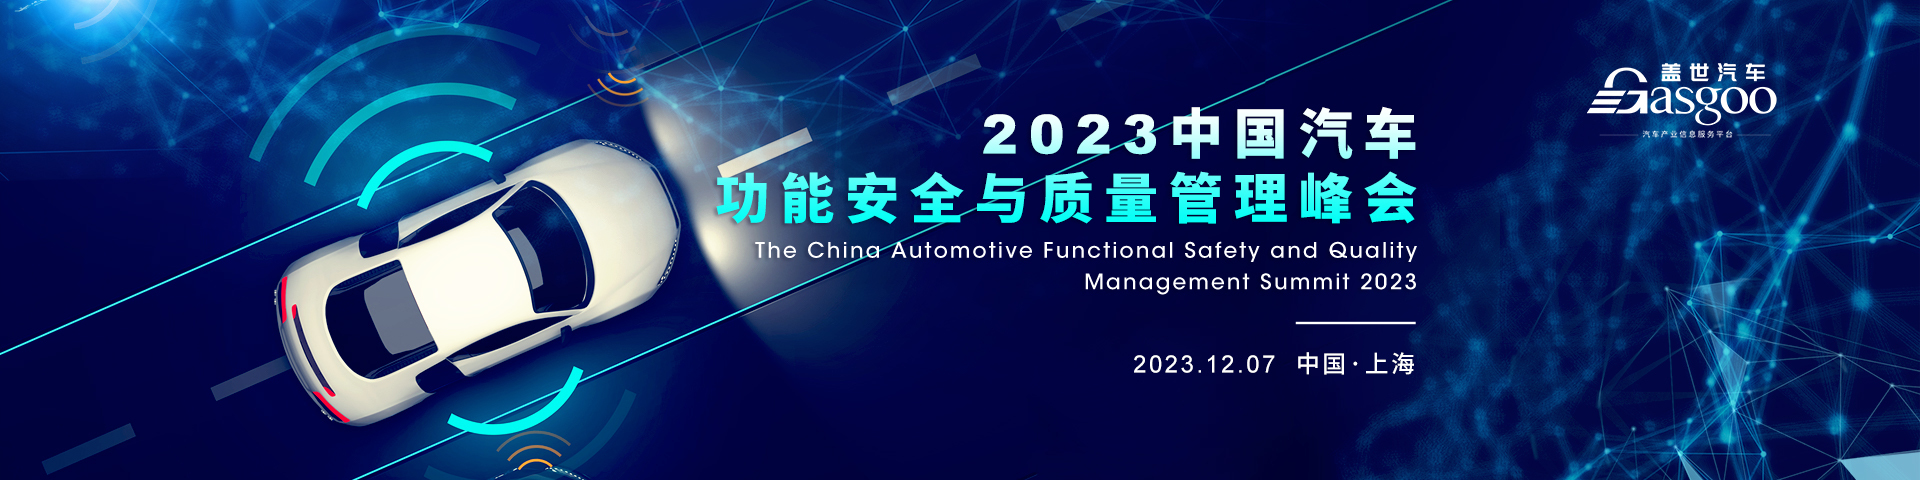 盖世汽车2023中国汽车功能安全与质量管理峰会